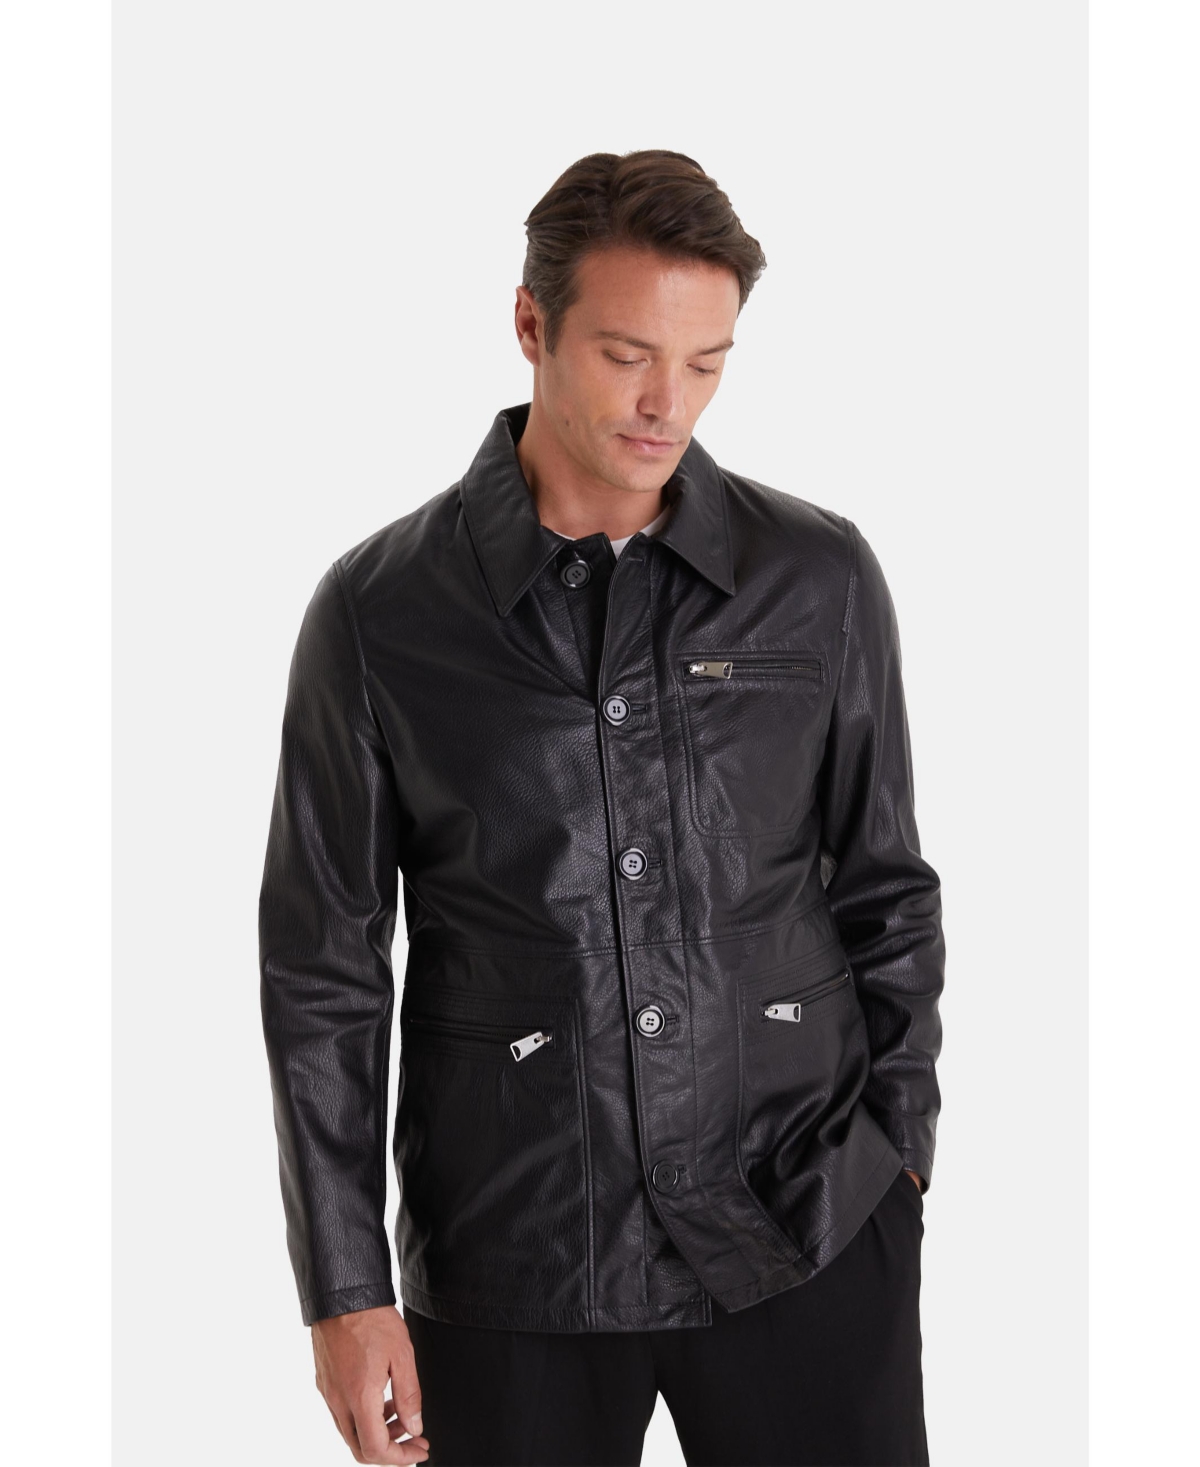 Men's Genuine Leather Jacket Black - Black